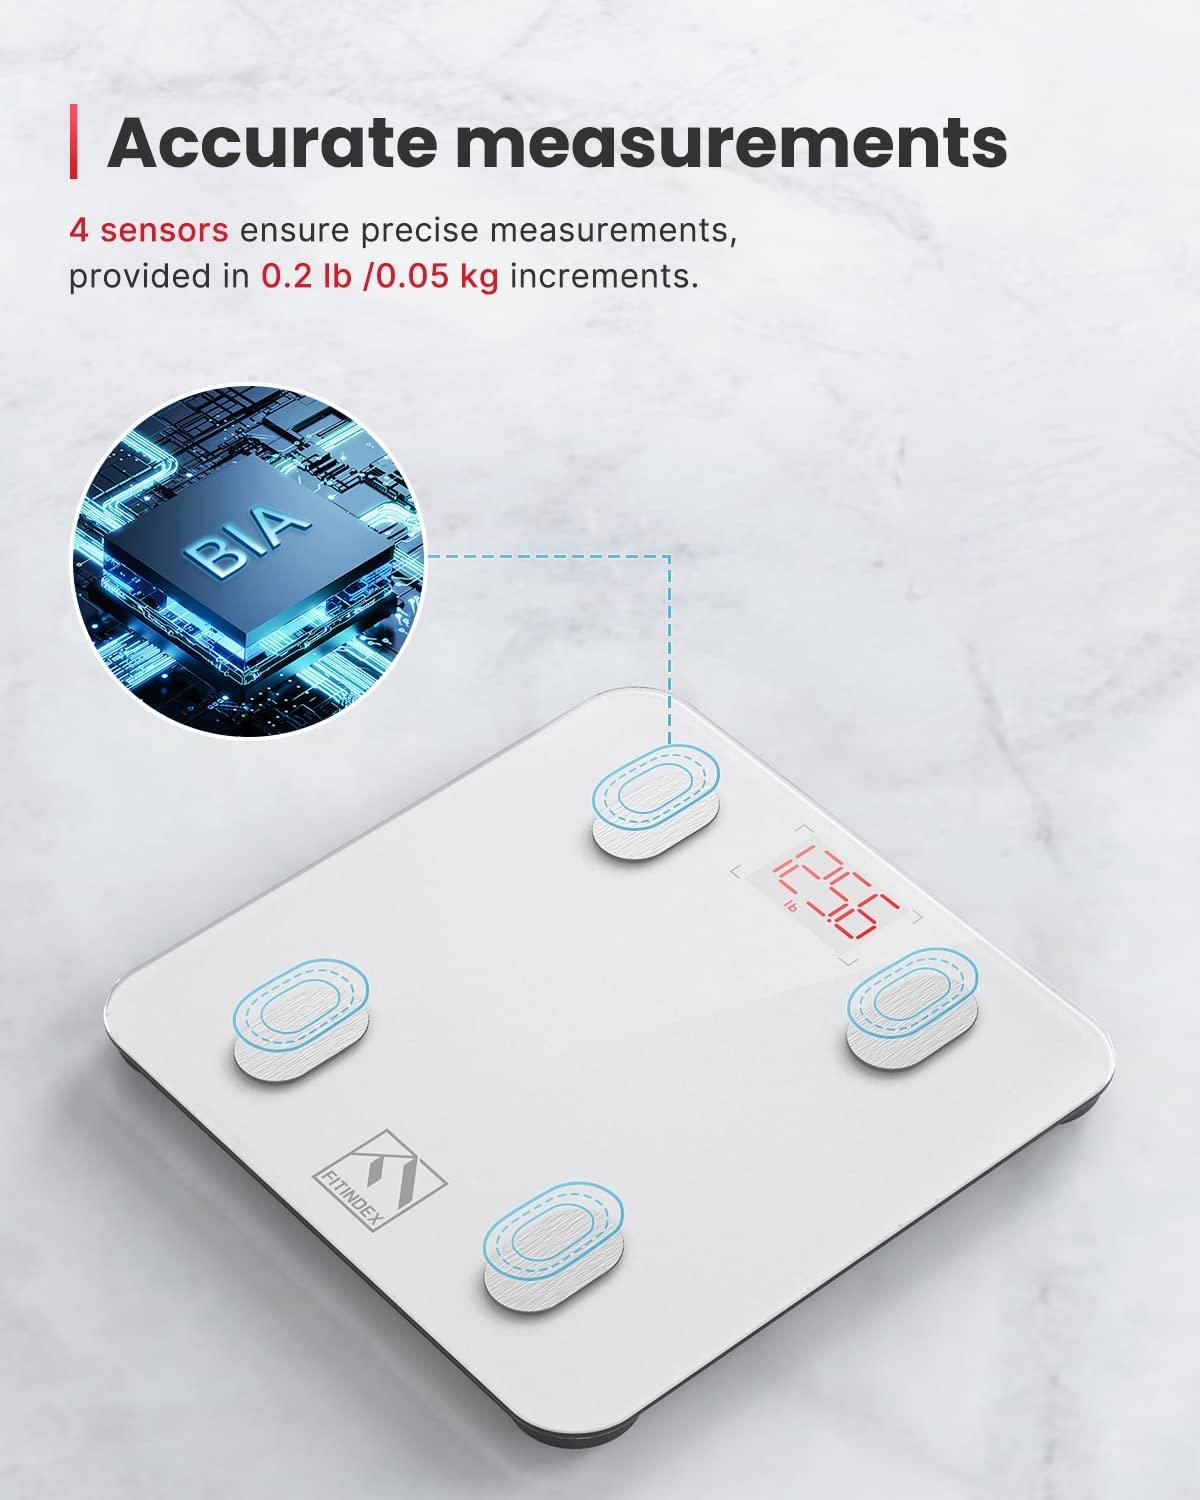 Rechargeable Body Fat Scale Smart Wireless Digital Bathroom Scale